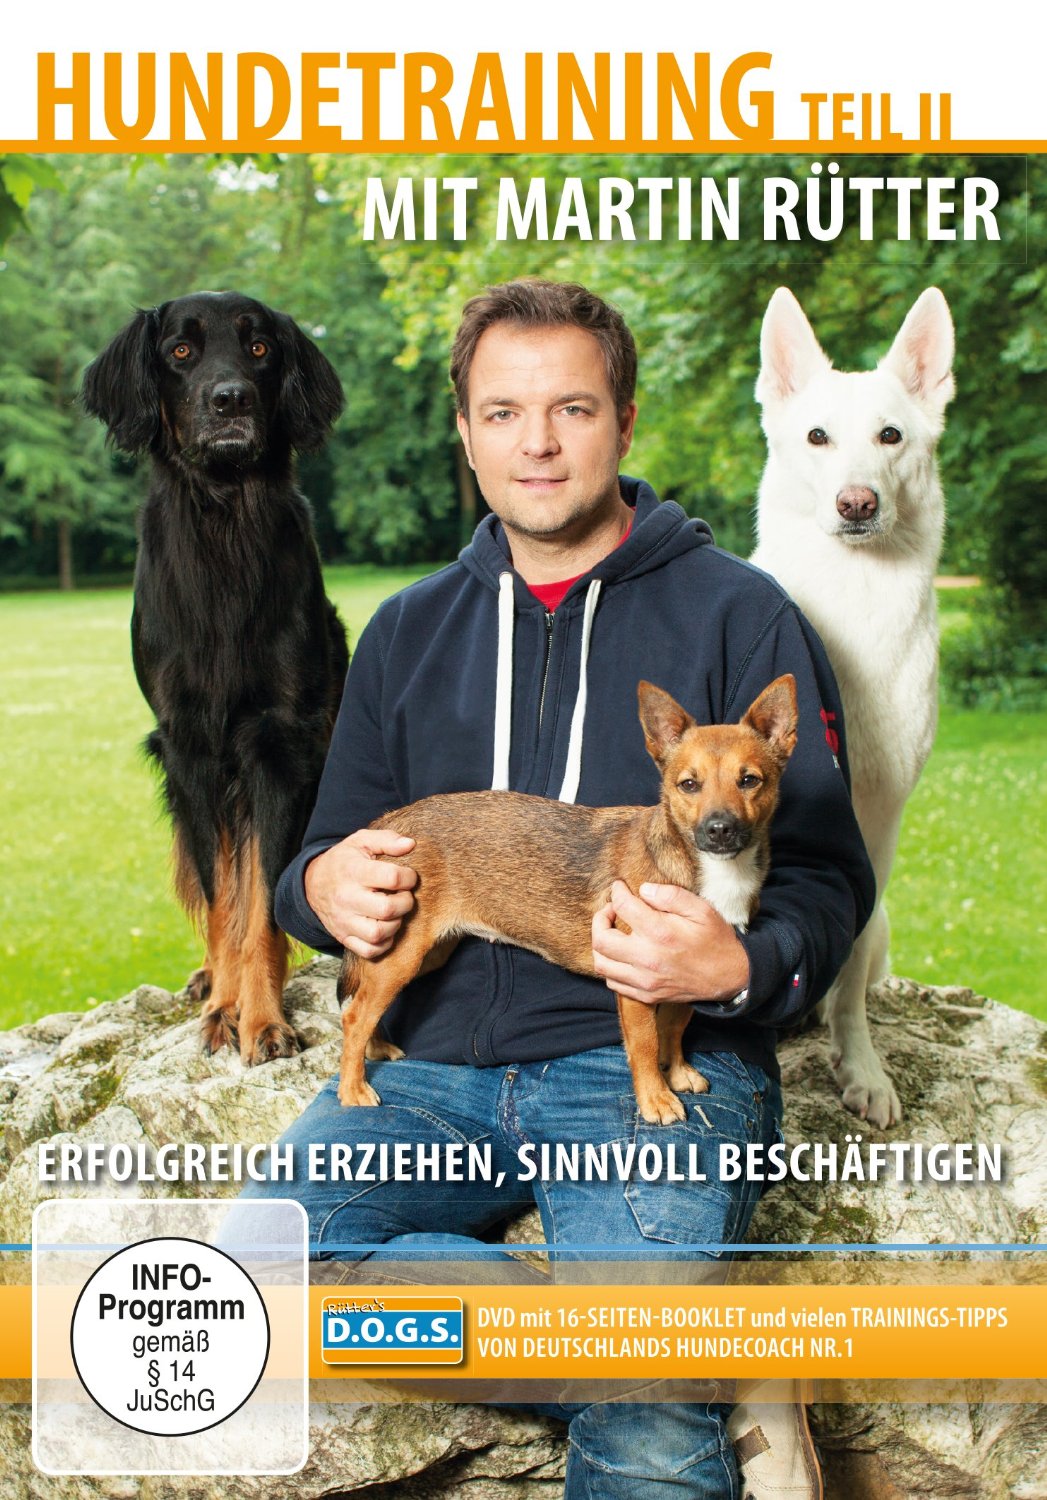 Hundetraining Martin Rütter